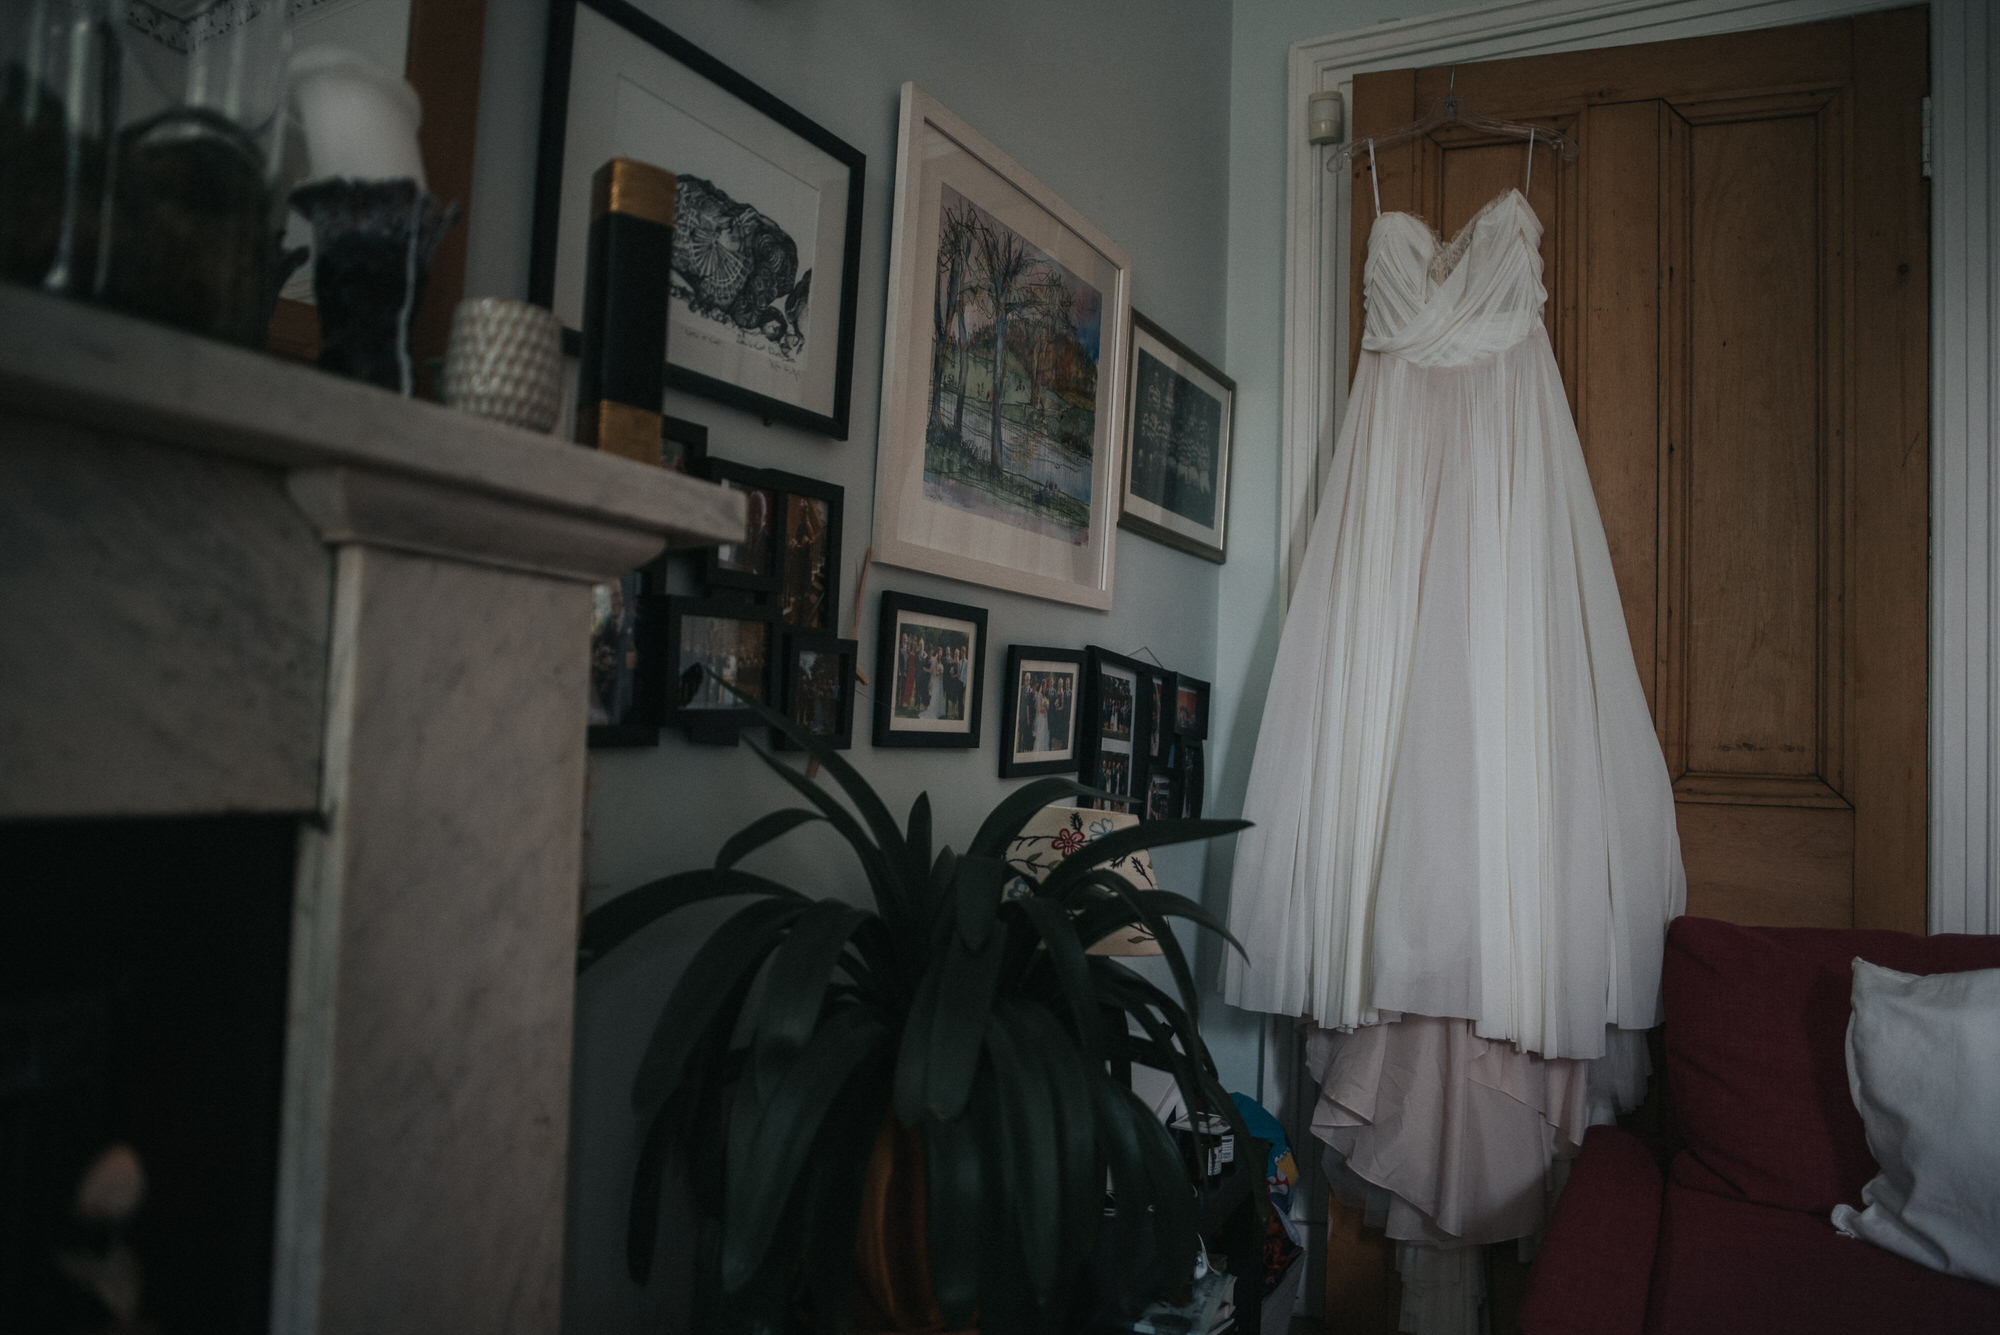 The brides Dress hangs from the door